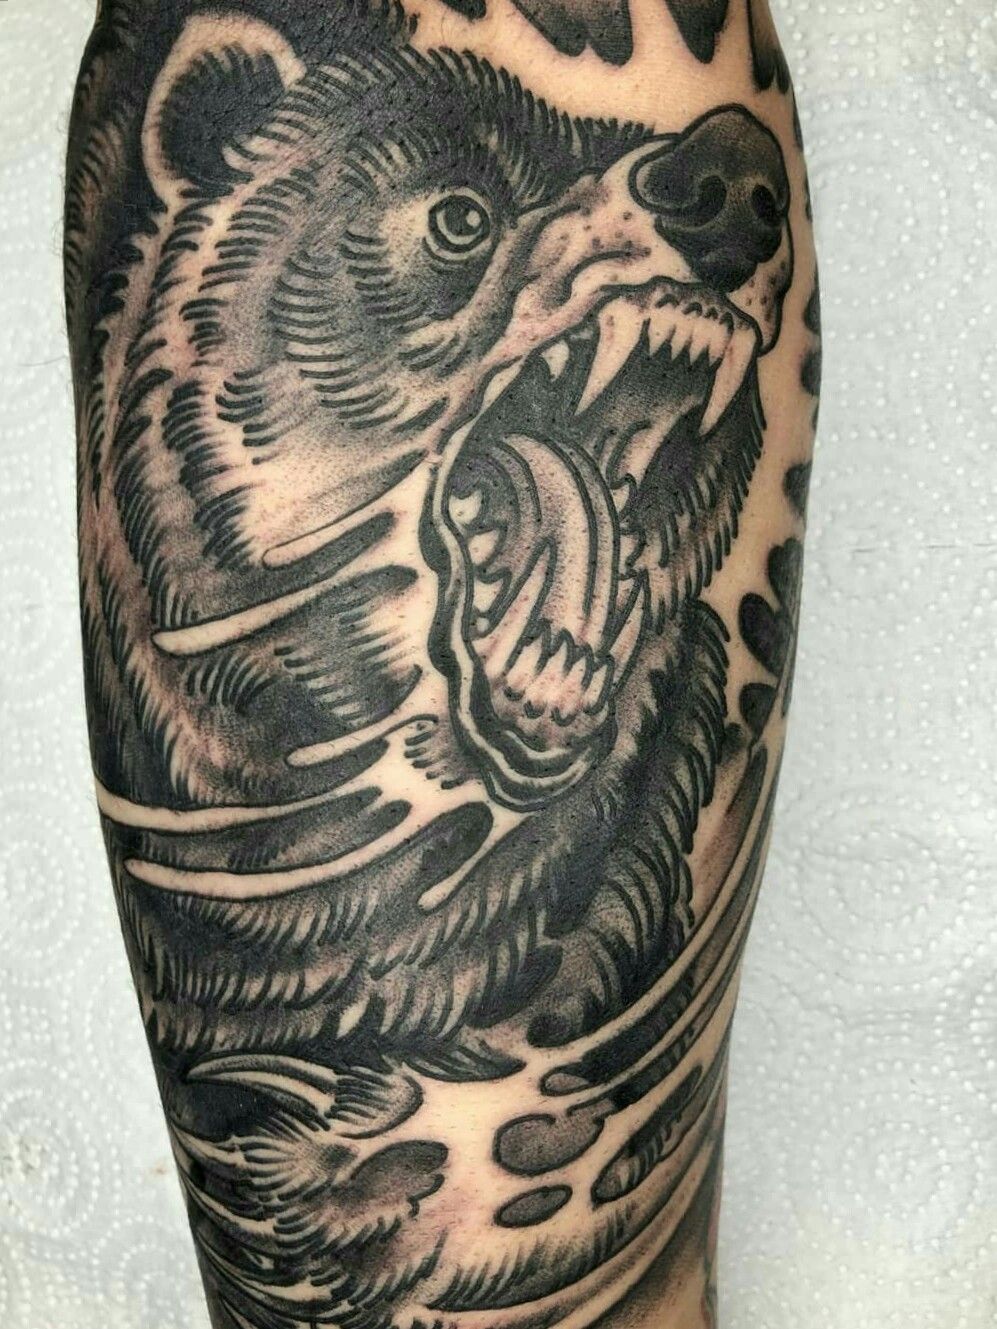 Beast inside | Ripped skin tattoo, 3d tattoos, Cool tattoos